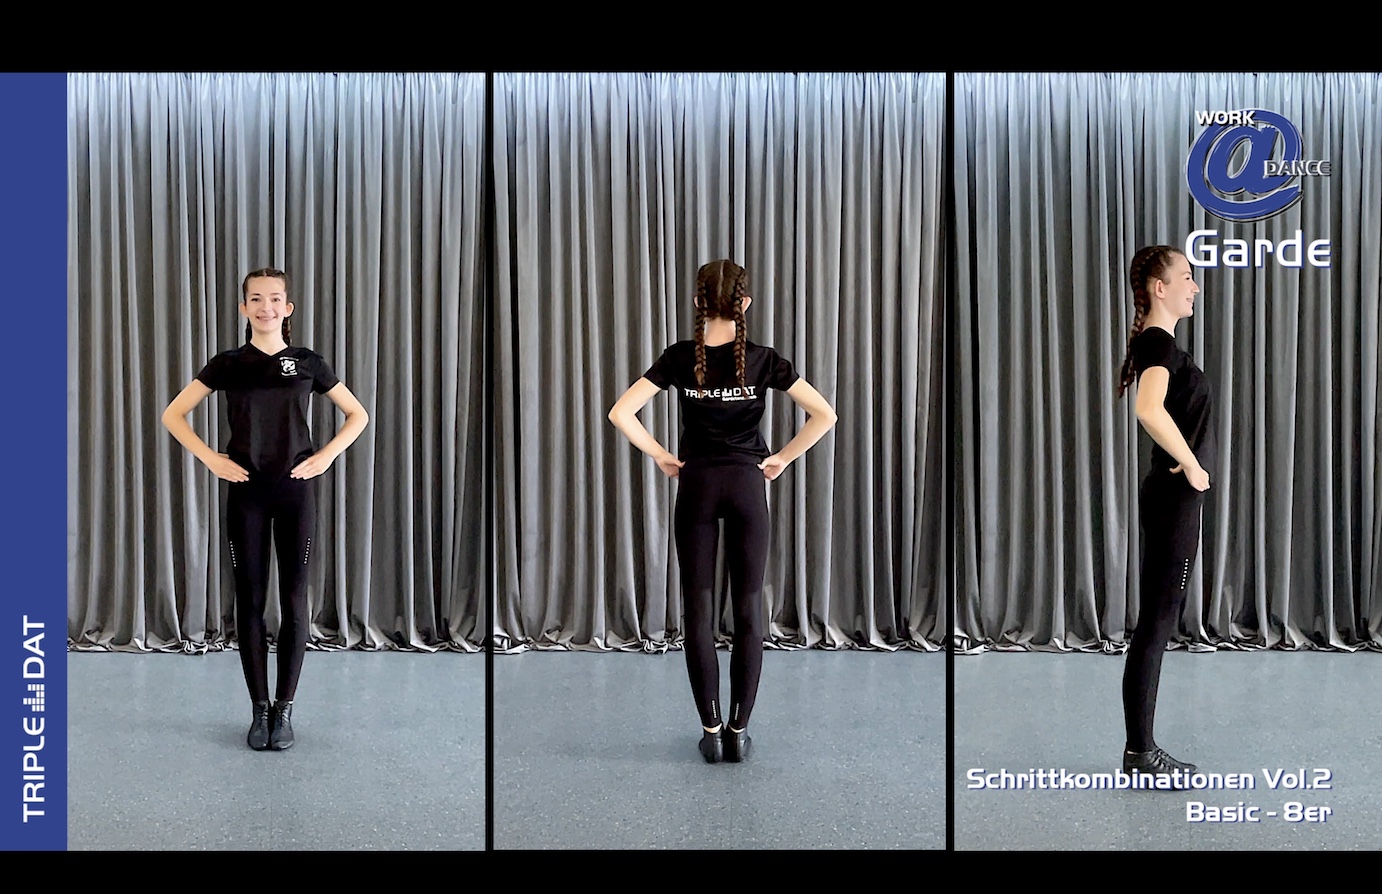 Work@Dance Garde Schrittkombinationen 02 - Basic